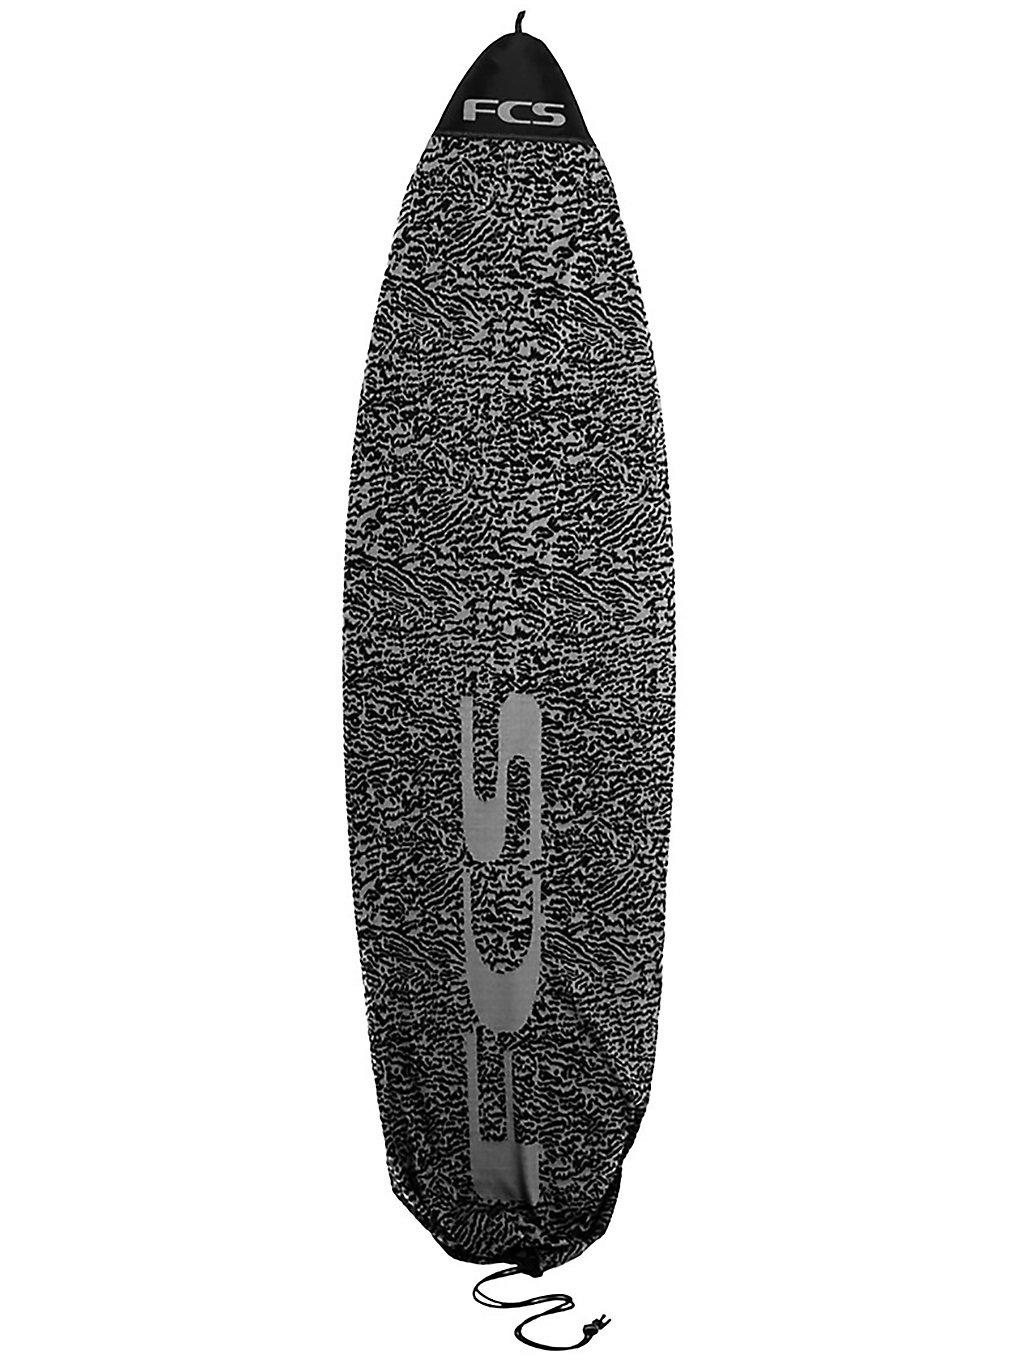 FCS Stretch Fun 6'7 Surfboard-Tasche carbon kaufen